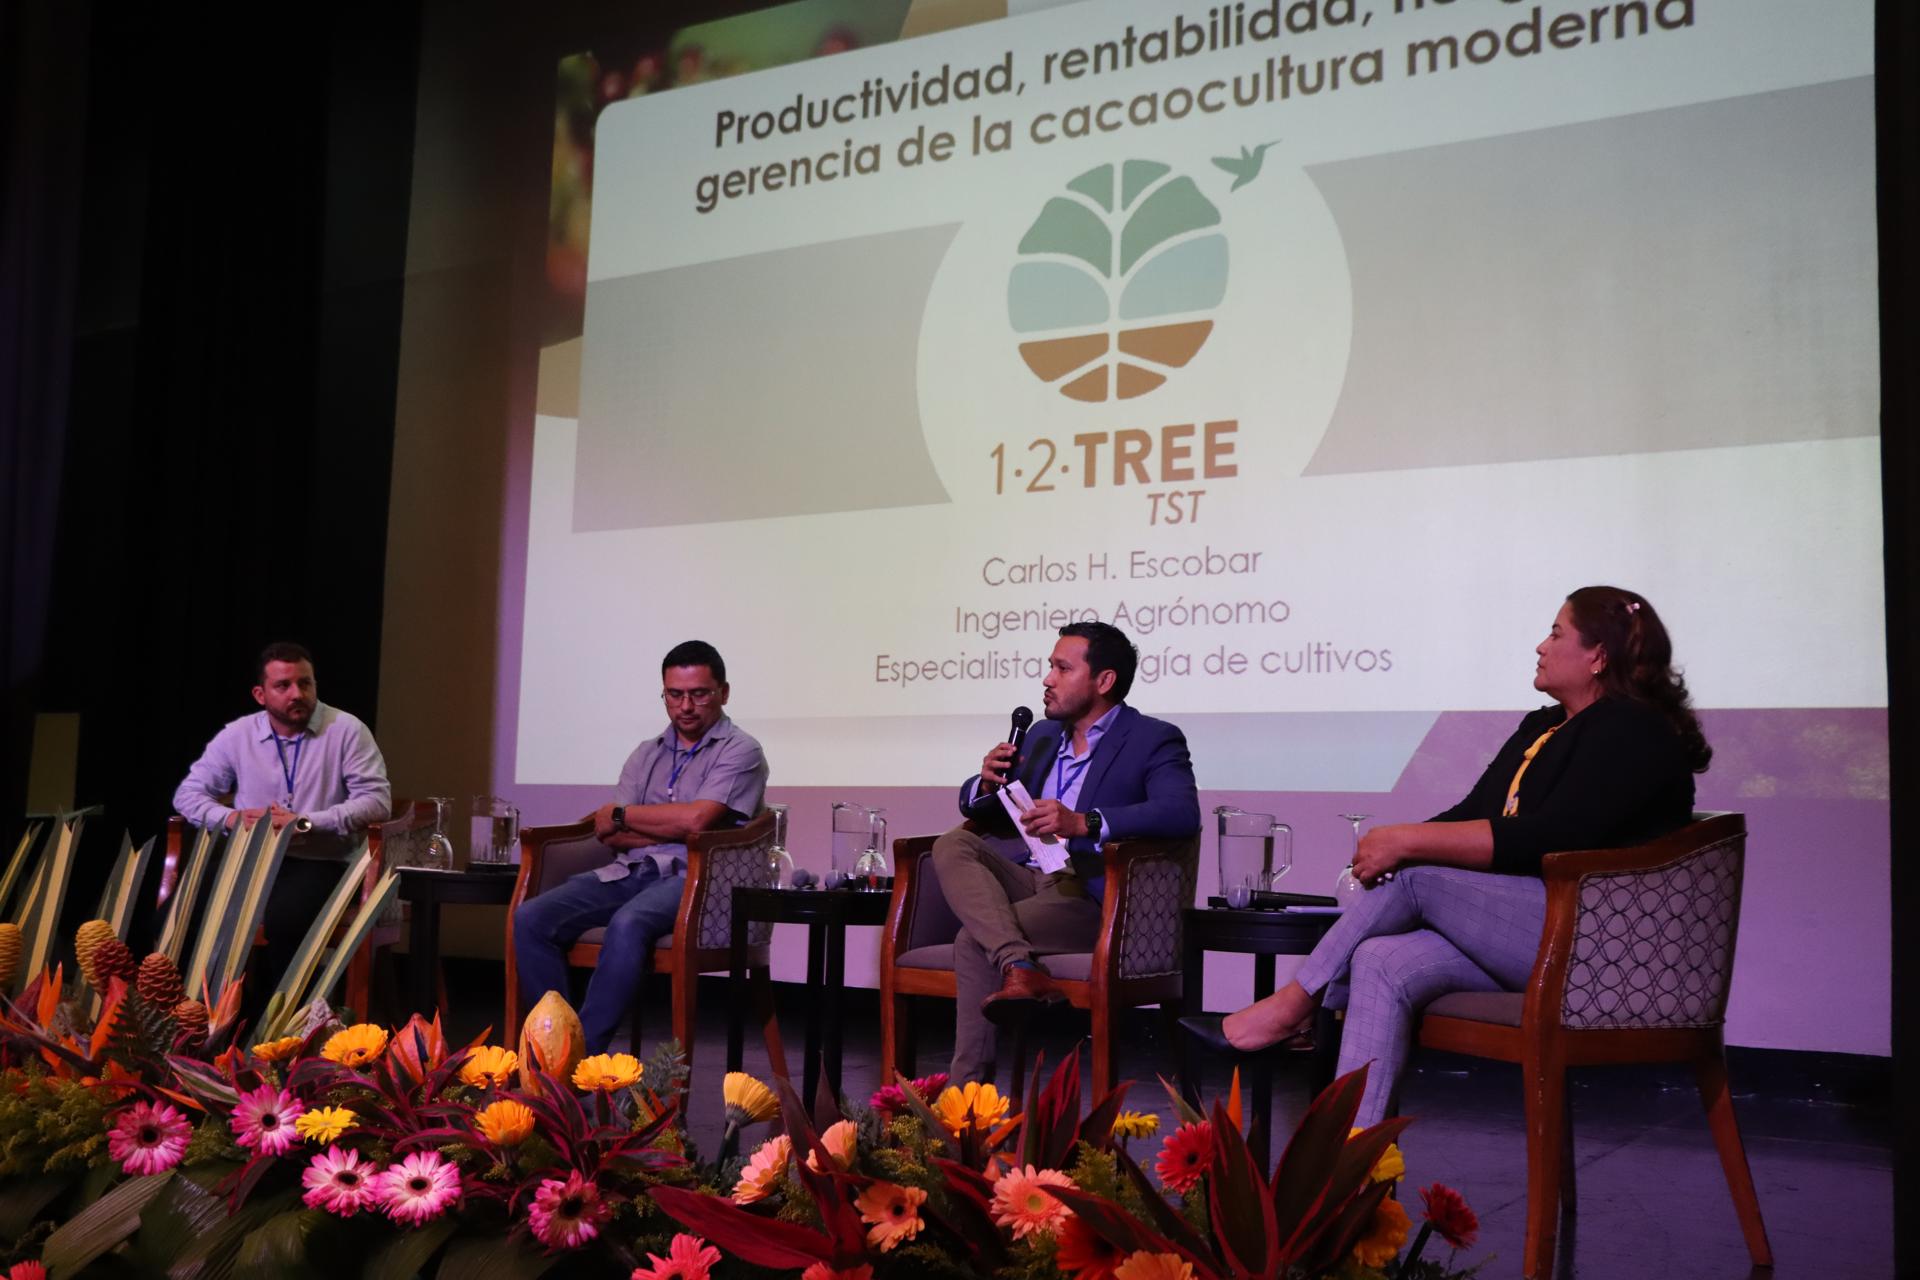 Líderes del cacao impulsan producción sostenible y rentable en Latinoamérica